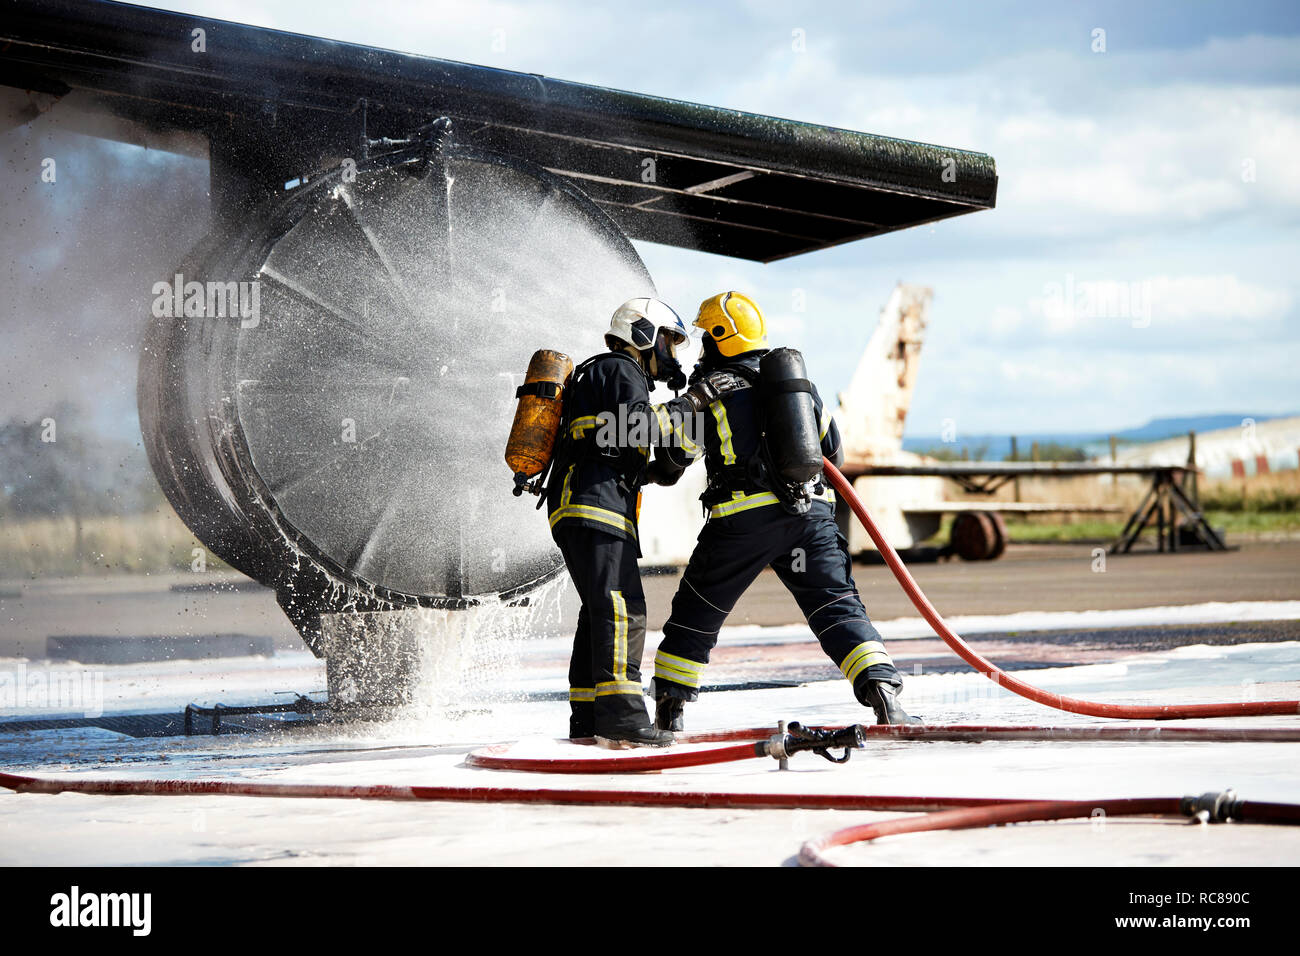 Los bomberos apagar el fuego en el antiguo avión de entrenamiento, Darlington, REINO UNIDO Foto de stock